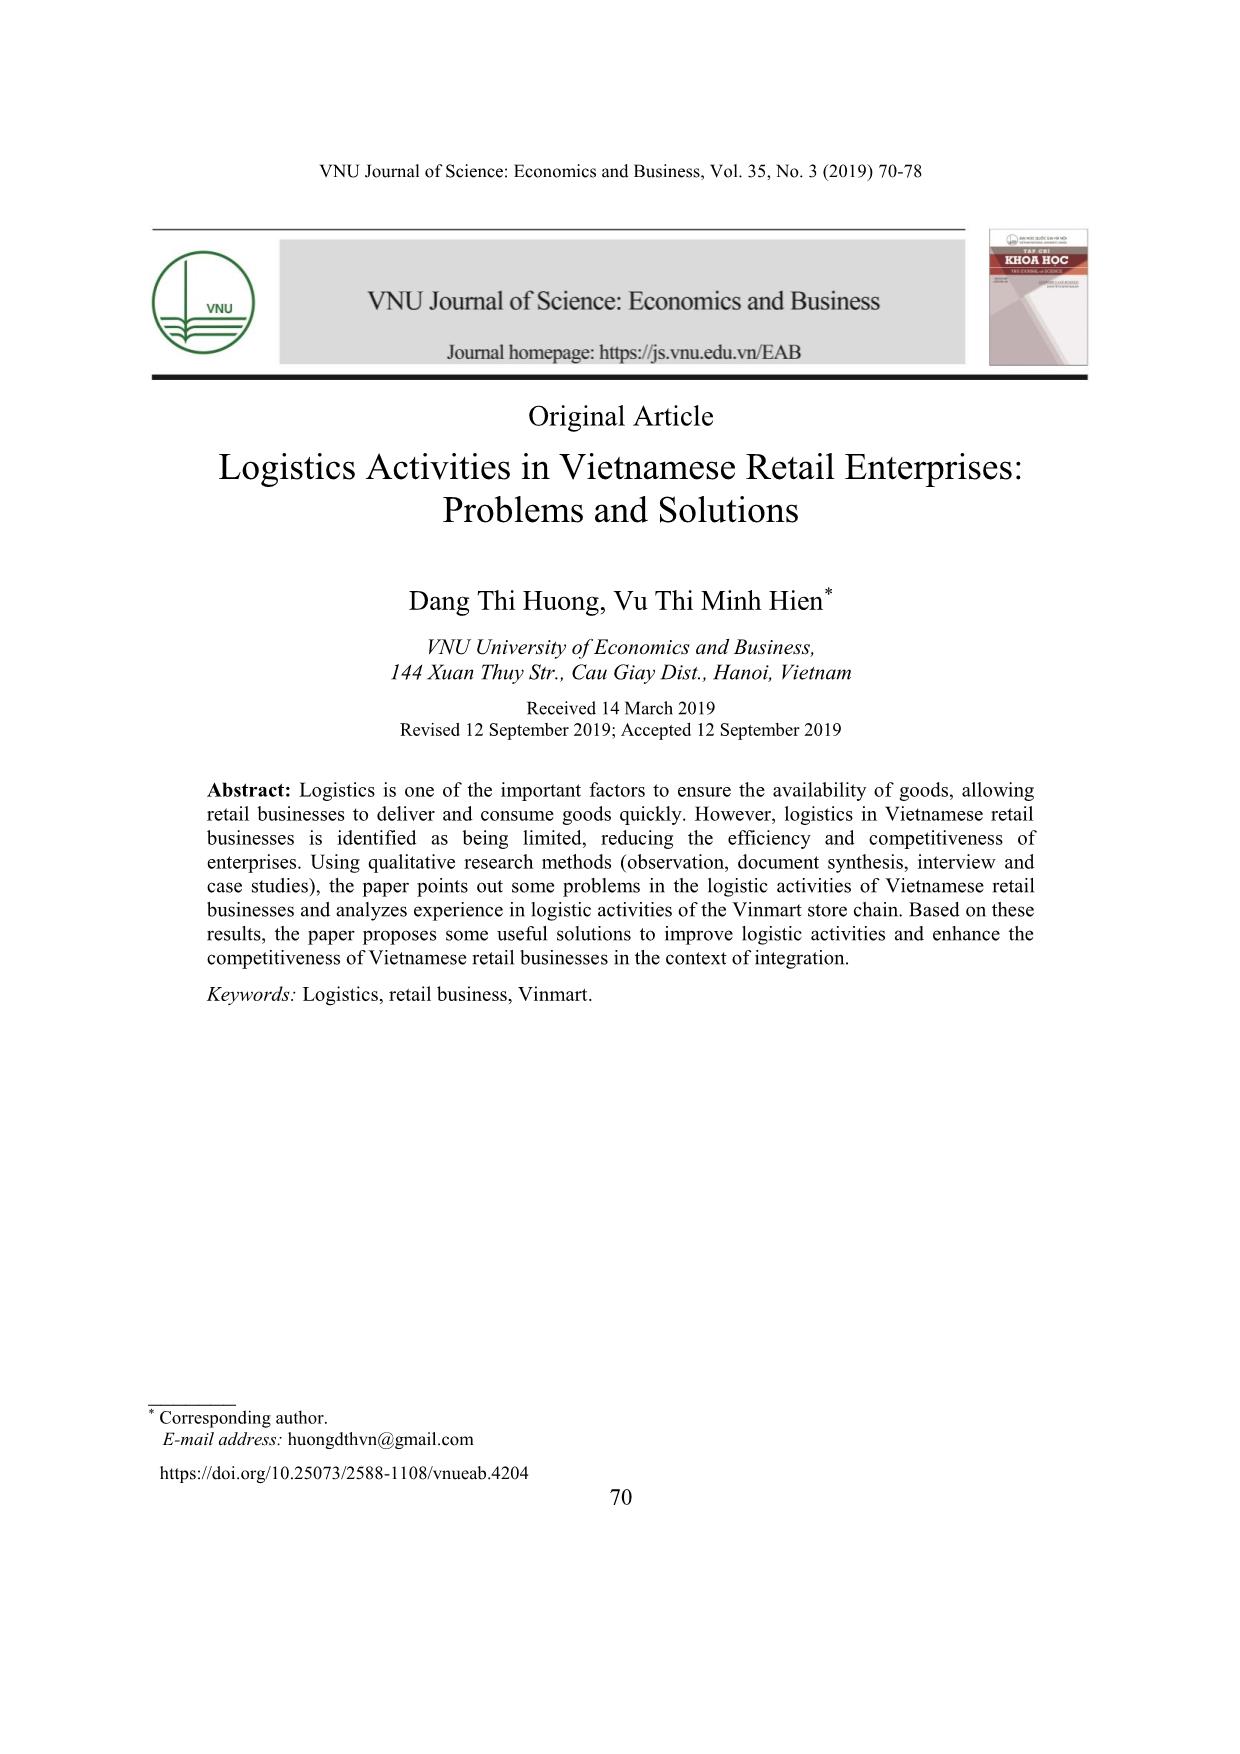 Hoạt động logistics trong các doanh nghiệp bán lẻ Việt Nam: Vấn đề và giải pháp trang 1